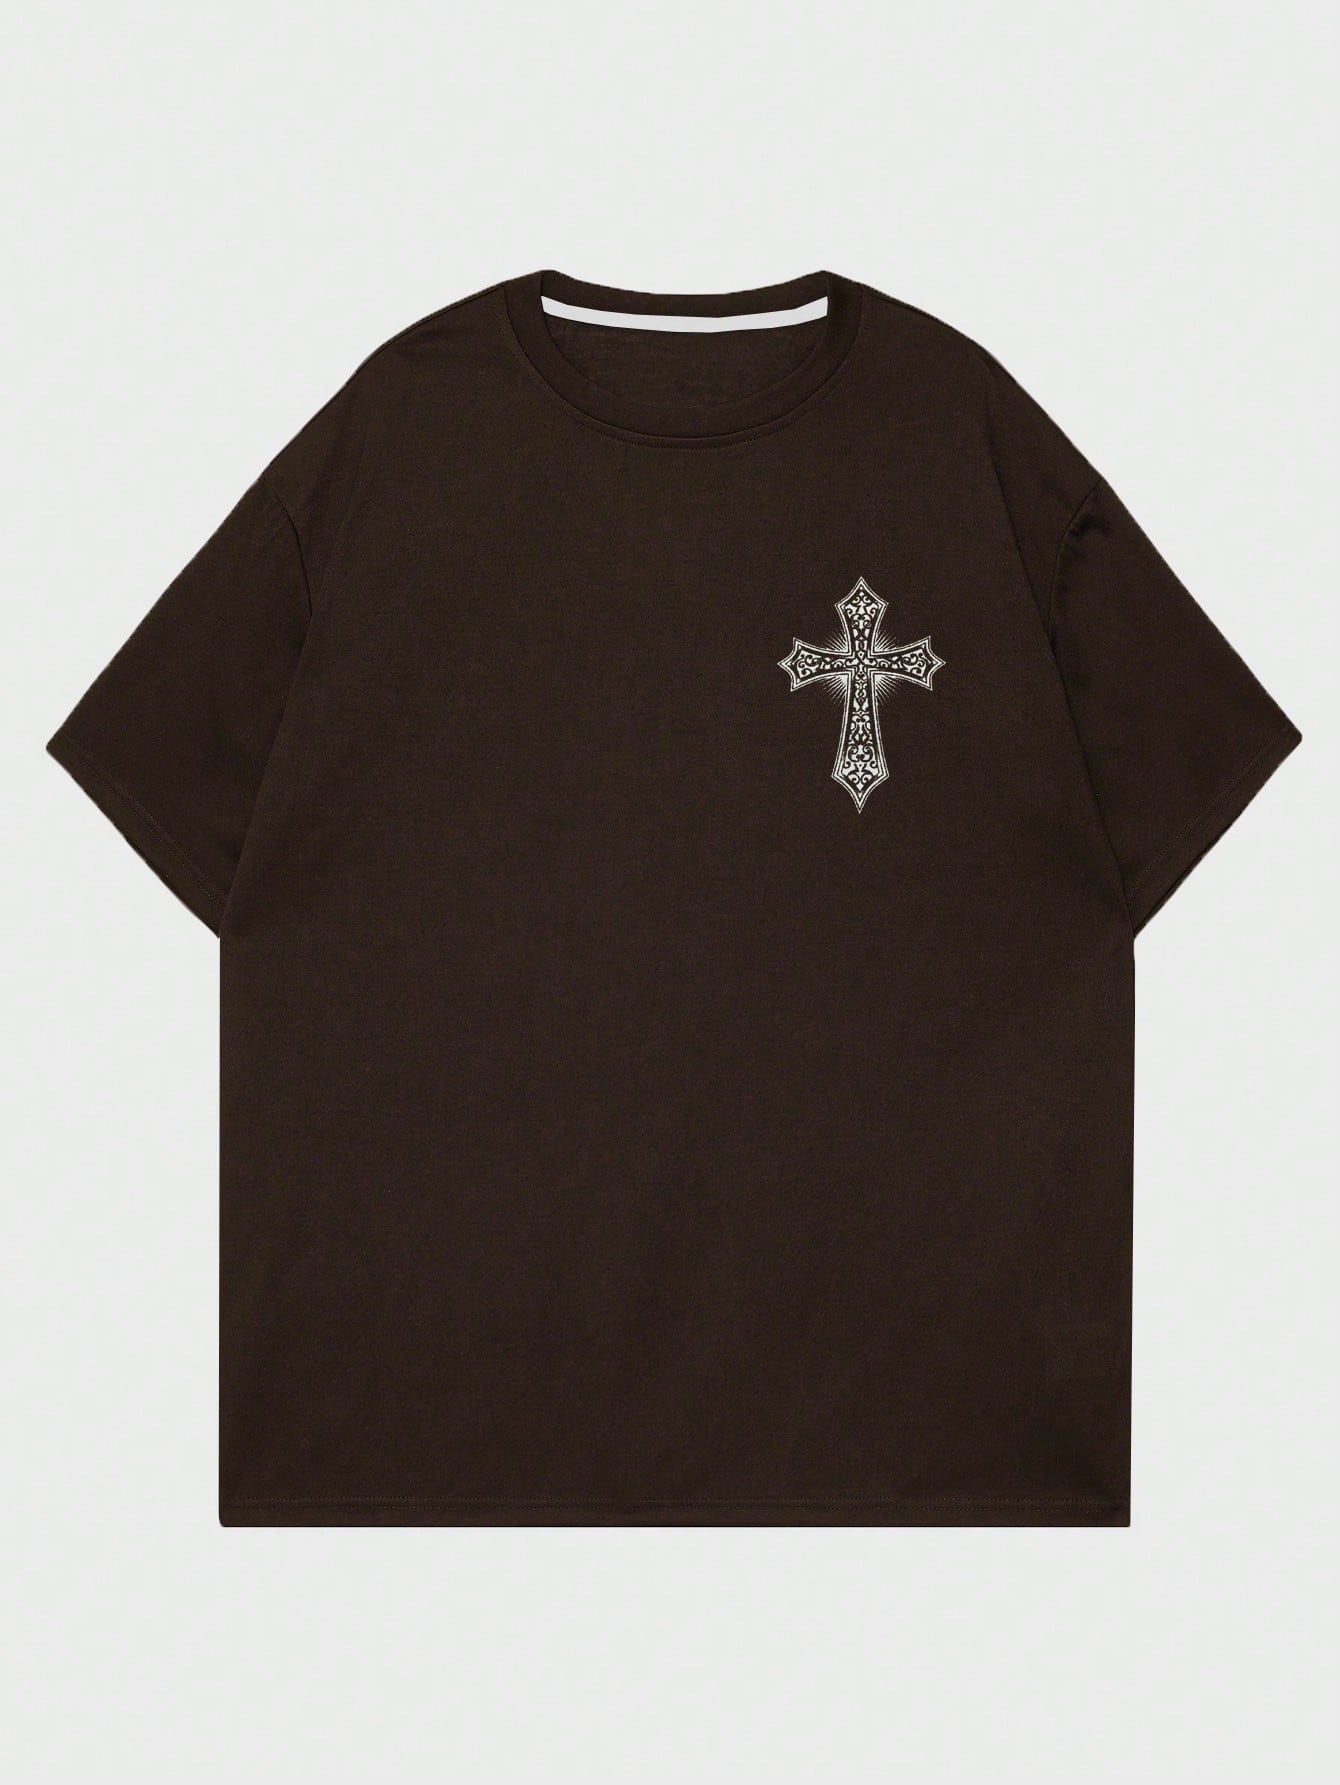 ROMWE Goth Мужская футболка с принтом снежинки и крестом для повседневной жизни, шоколадно-коричневый